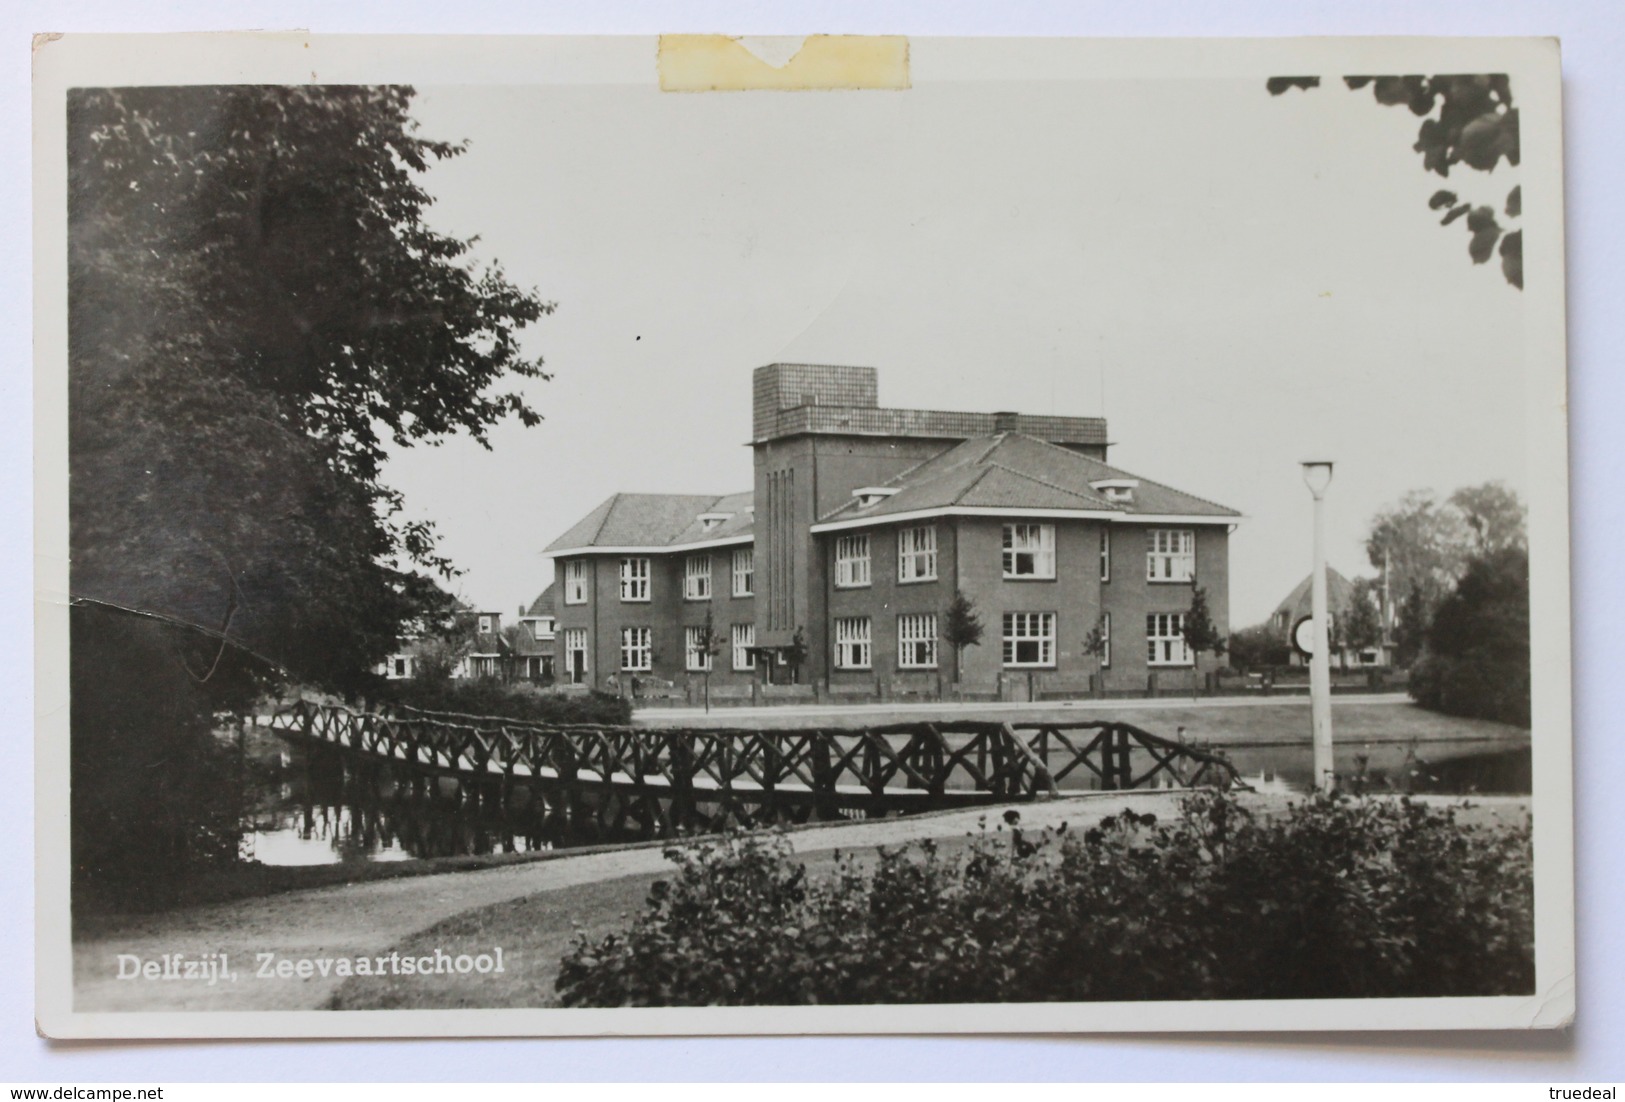 Delfzijl, Zeevaartschool, Nederland Netherlands, 1950s, Real Photo Postcard - Delfzijl